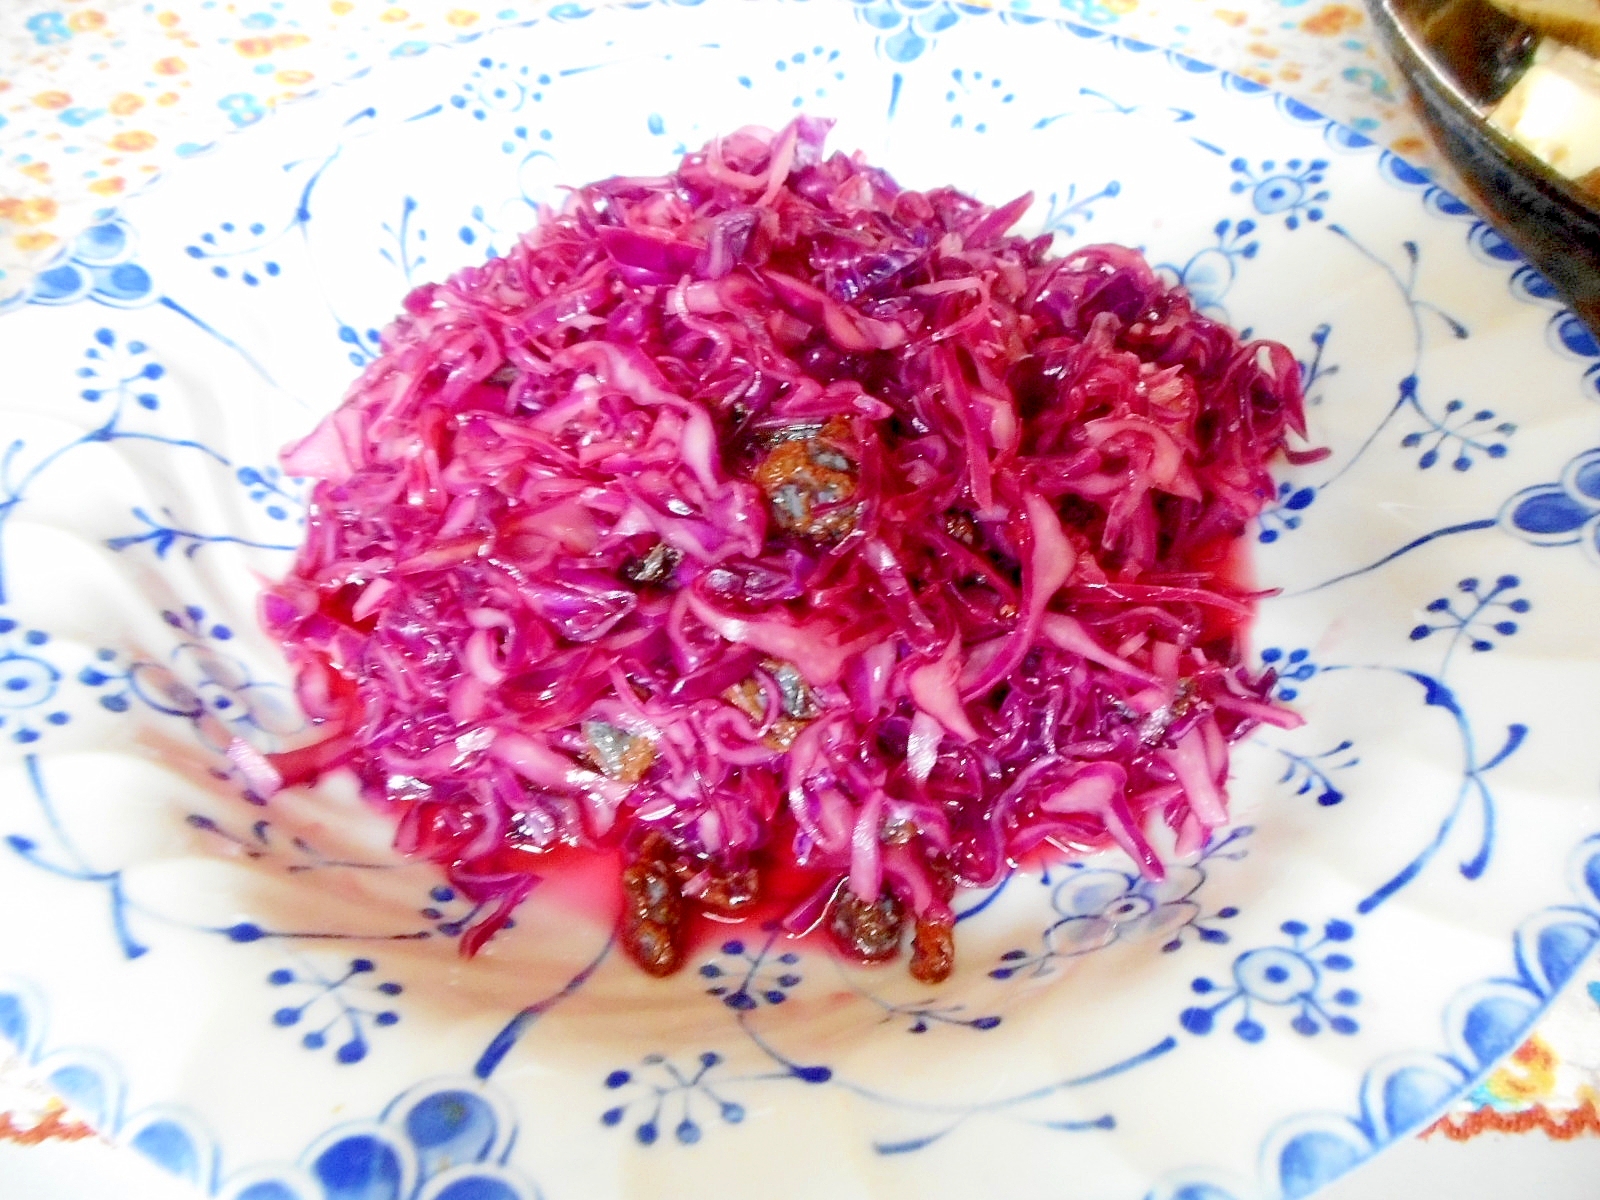 紫キャベツとレーズンのサラダ